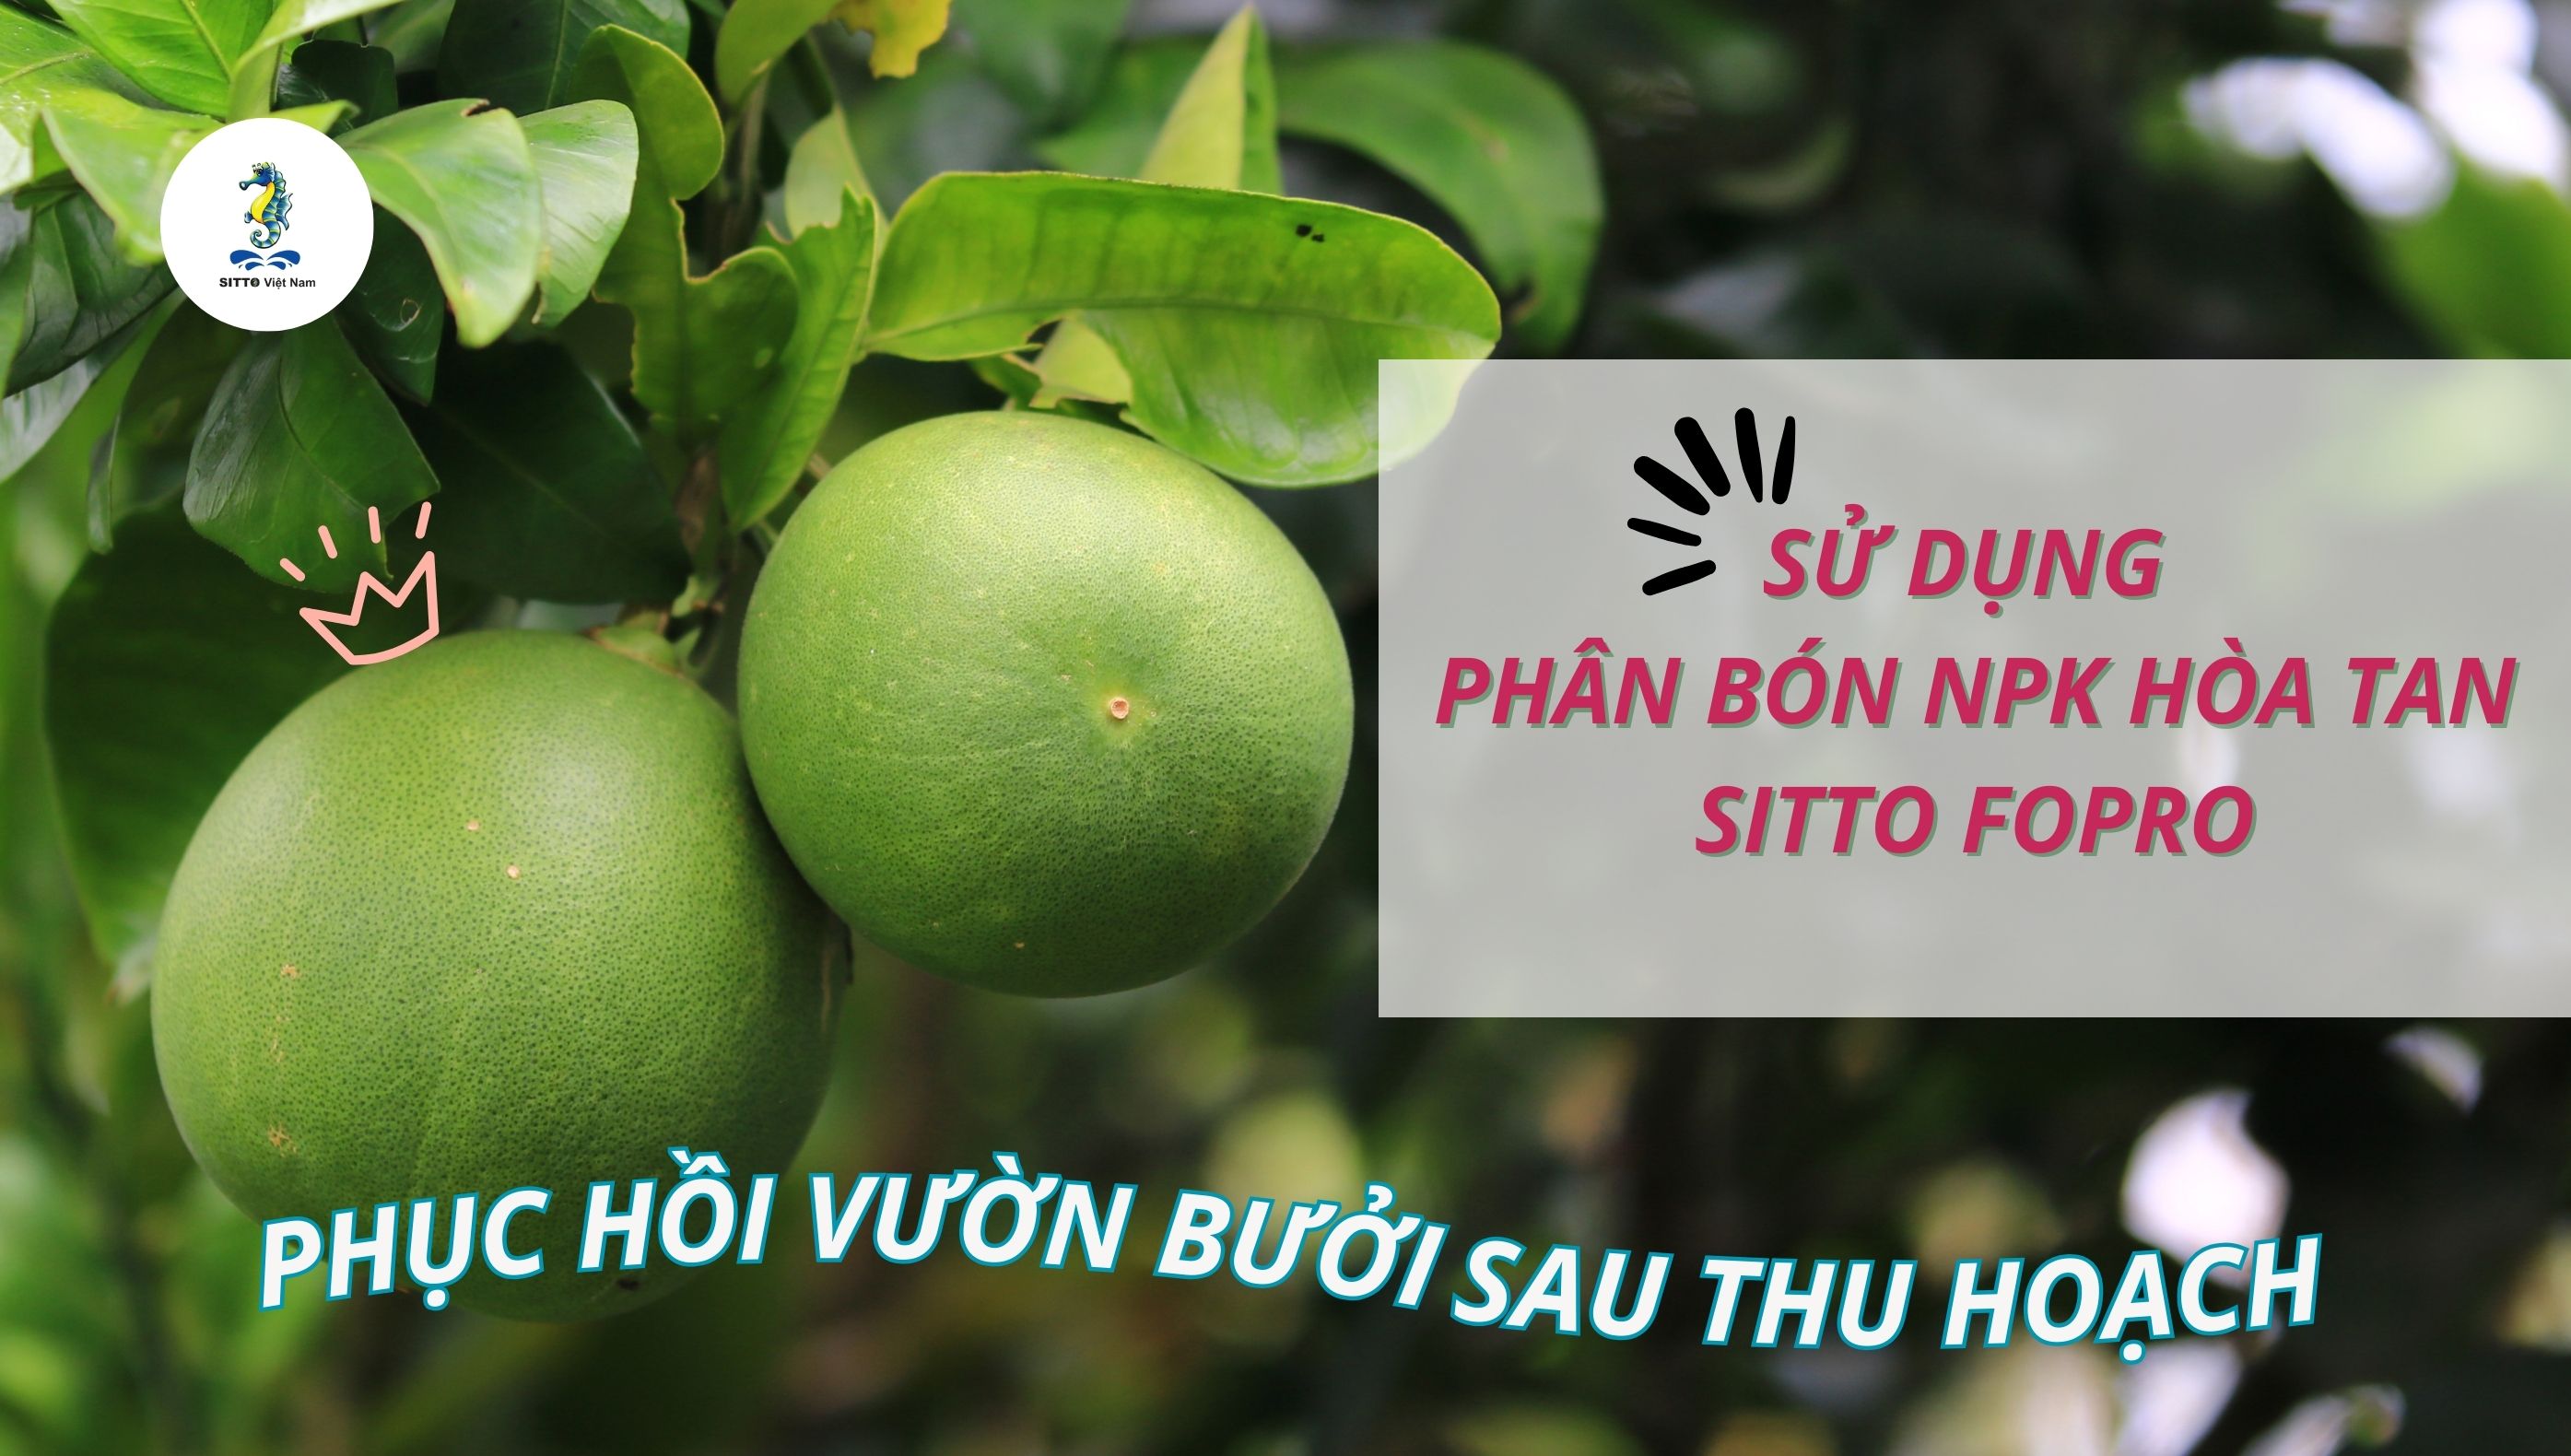 Sử dụng Sitto Fopro phục hồi vườn bưởi sau thu hoạch tại Bình Minh – Vĩnh Long